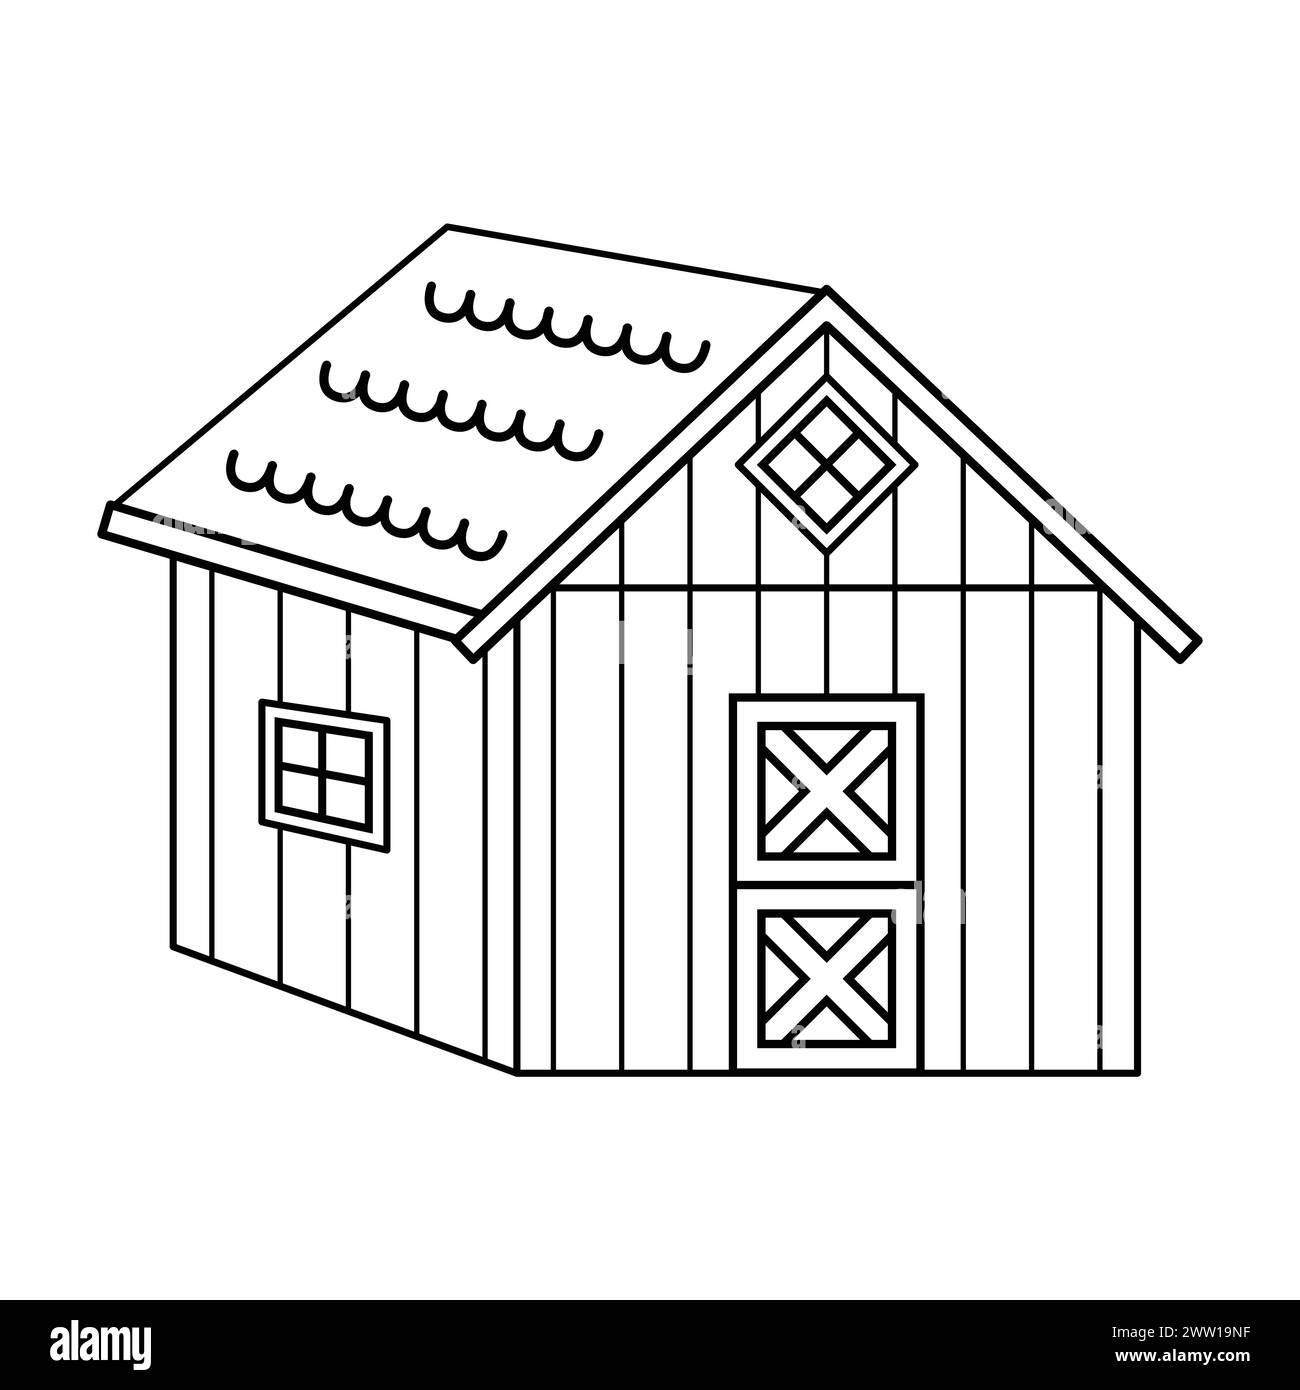 Schwarzes weißes, kleines Holzhaus oder Scheune, Tür ist geschlossen. Vektor Hand gezeichnet isolierte Illustration für Malbuch Stock Vektor